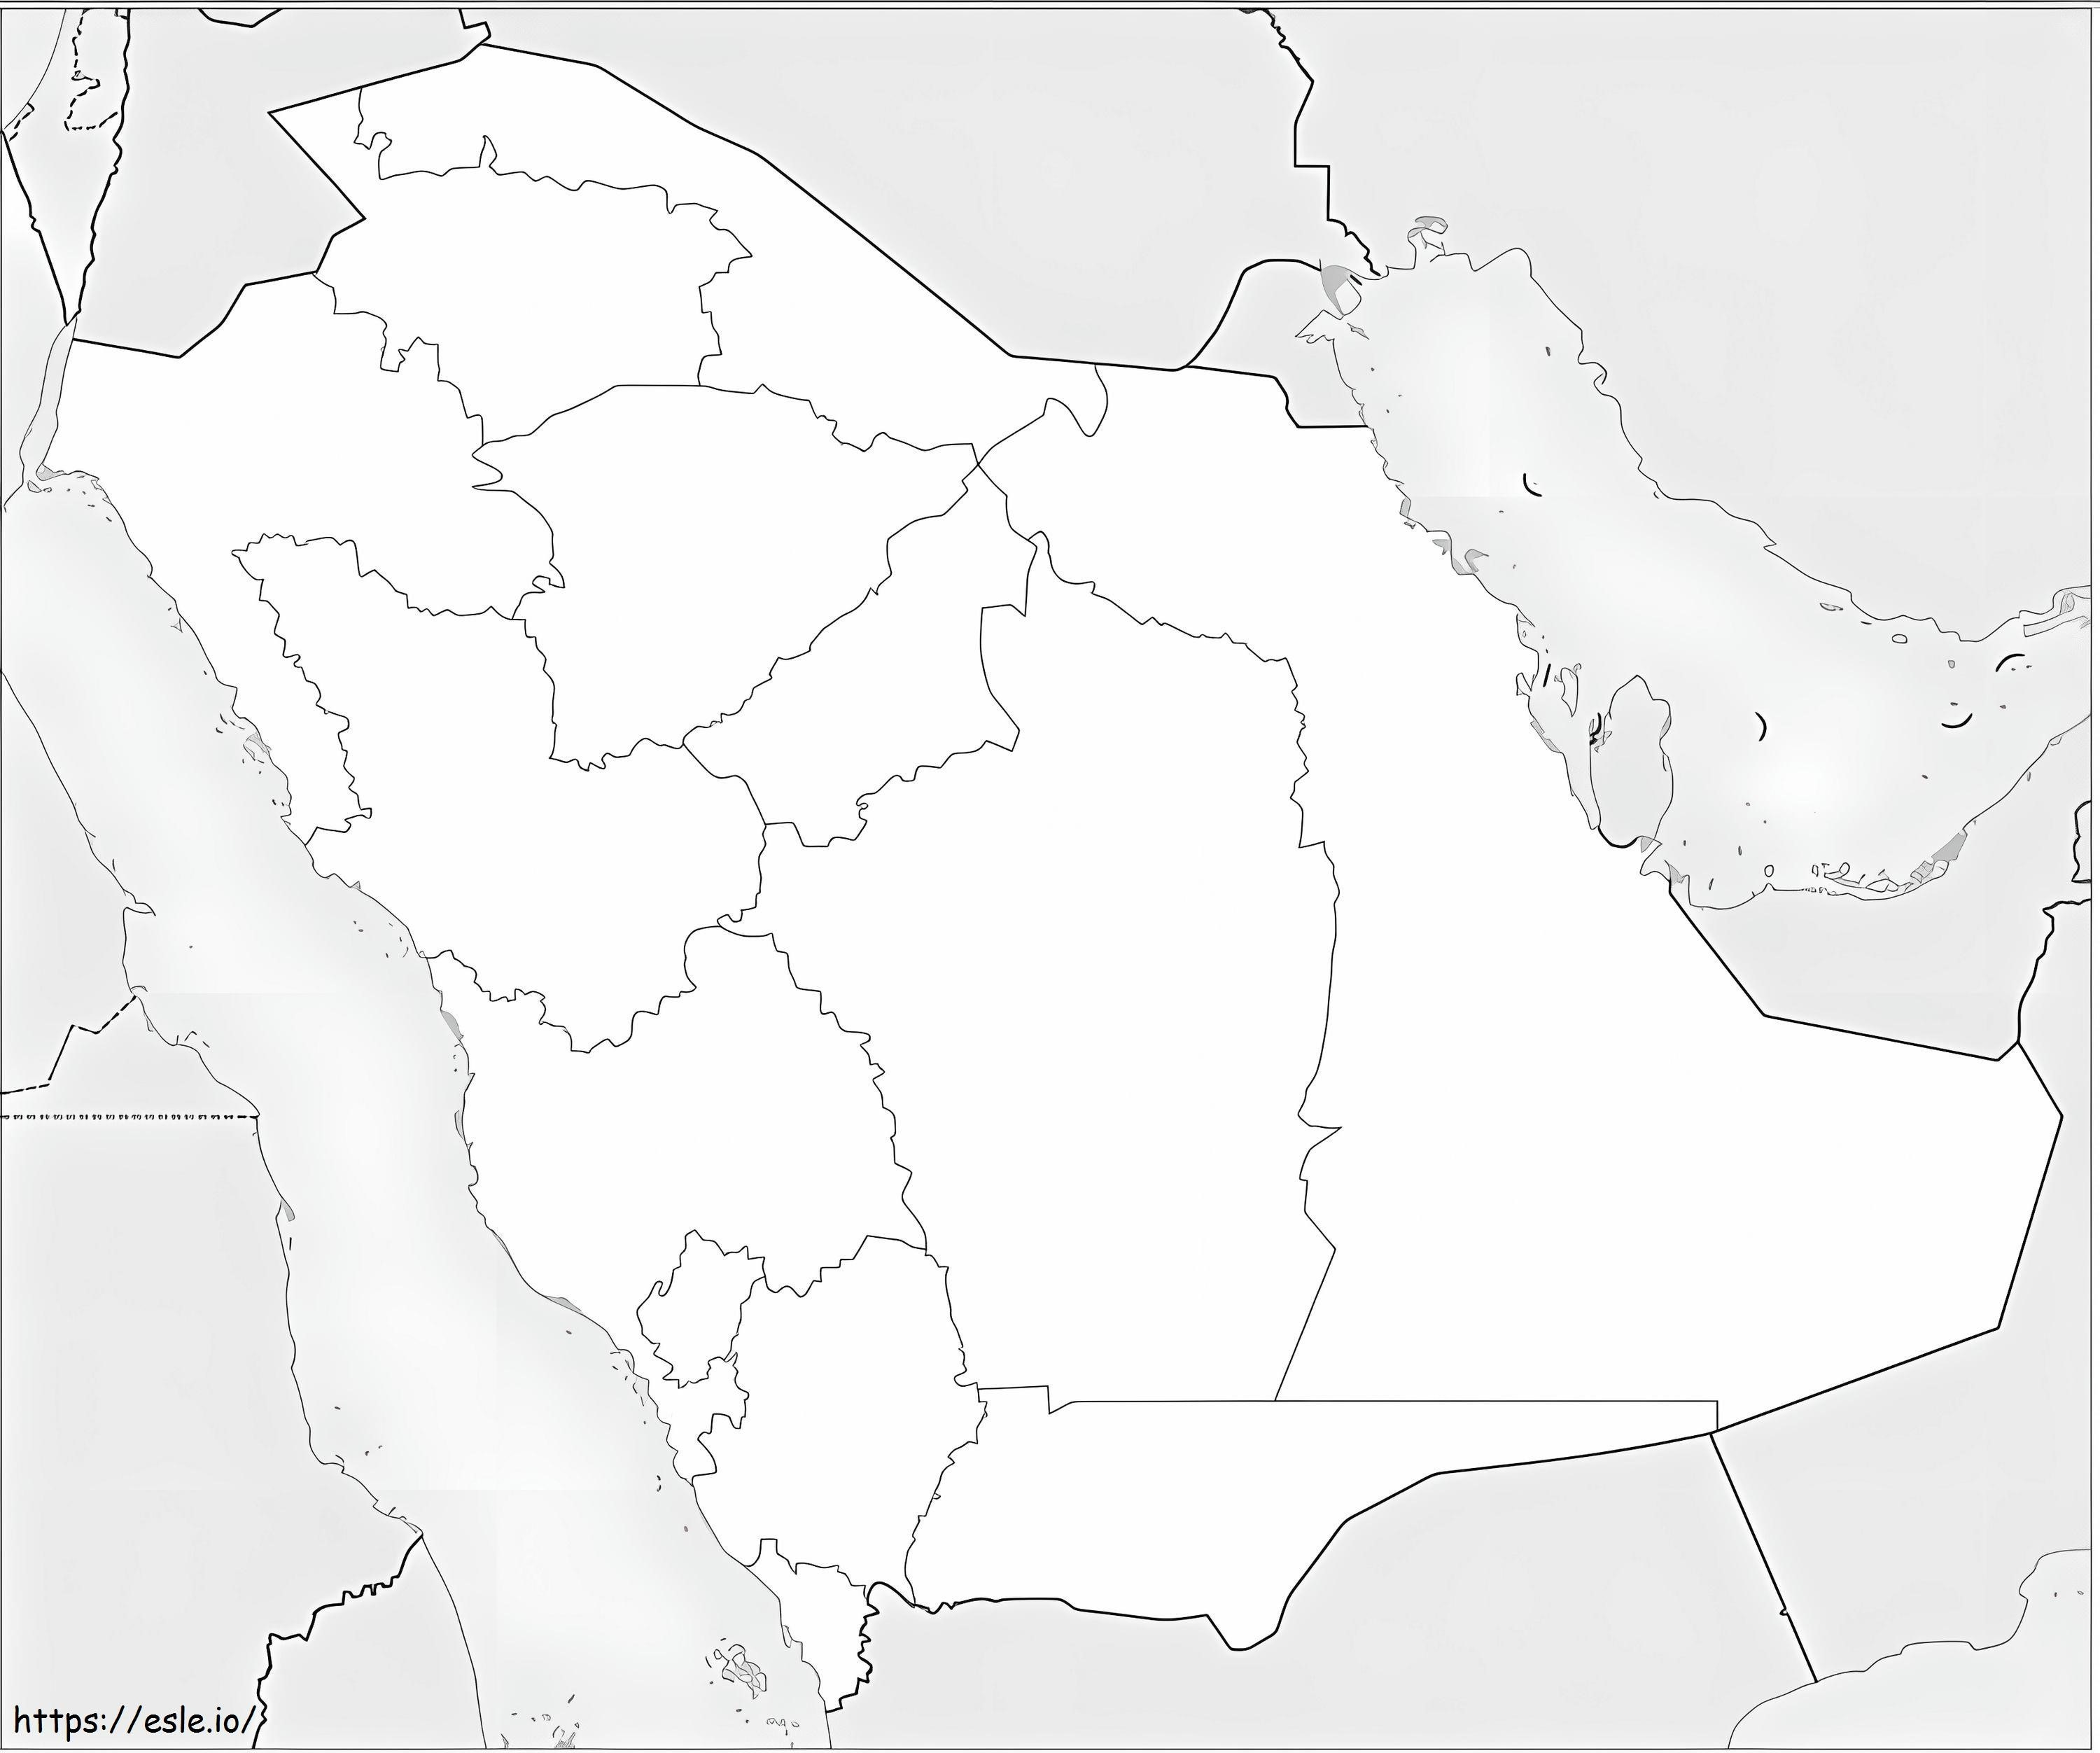 Suudi Arabistan Haritası boyama